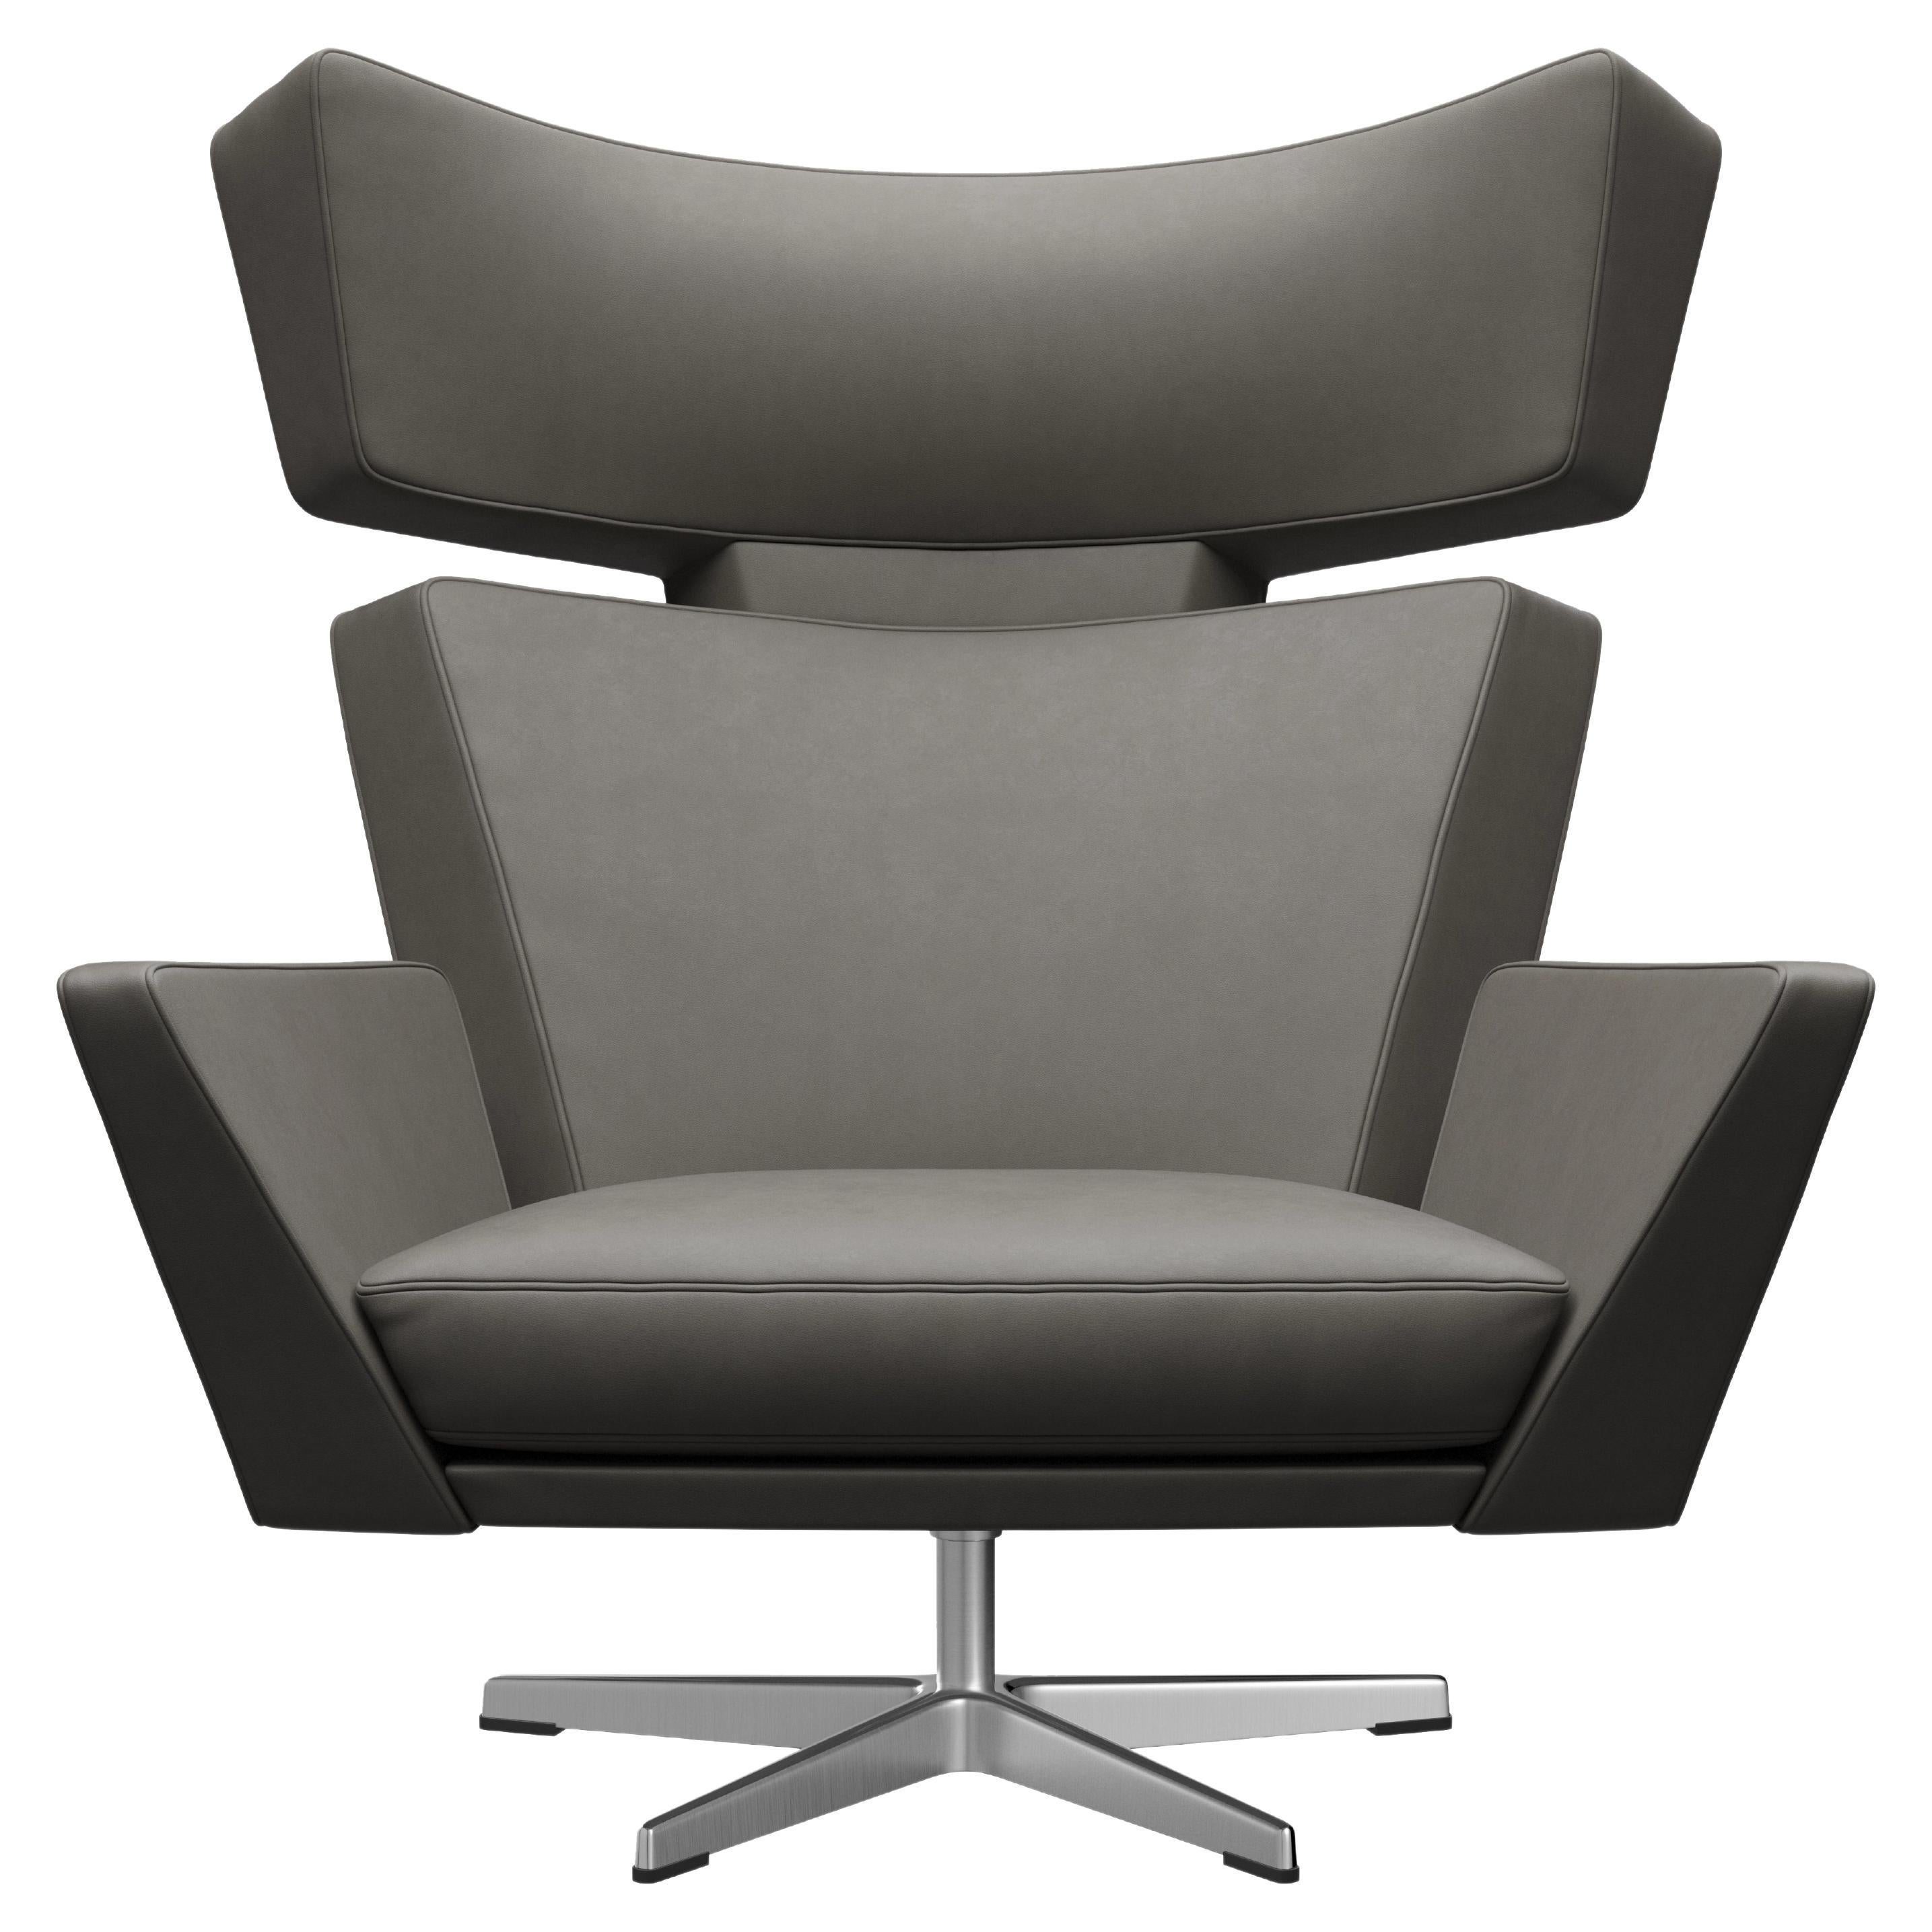 Arne Jacobsen 'Oksen' Chair for Fritz Hansen in Essential Leather Upholstery For Sale